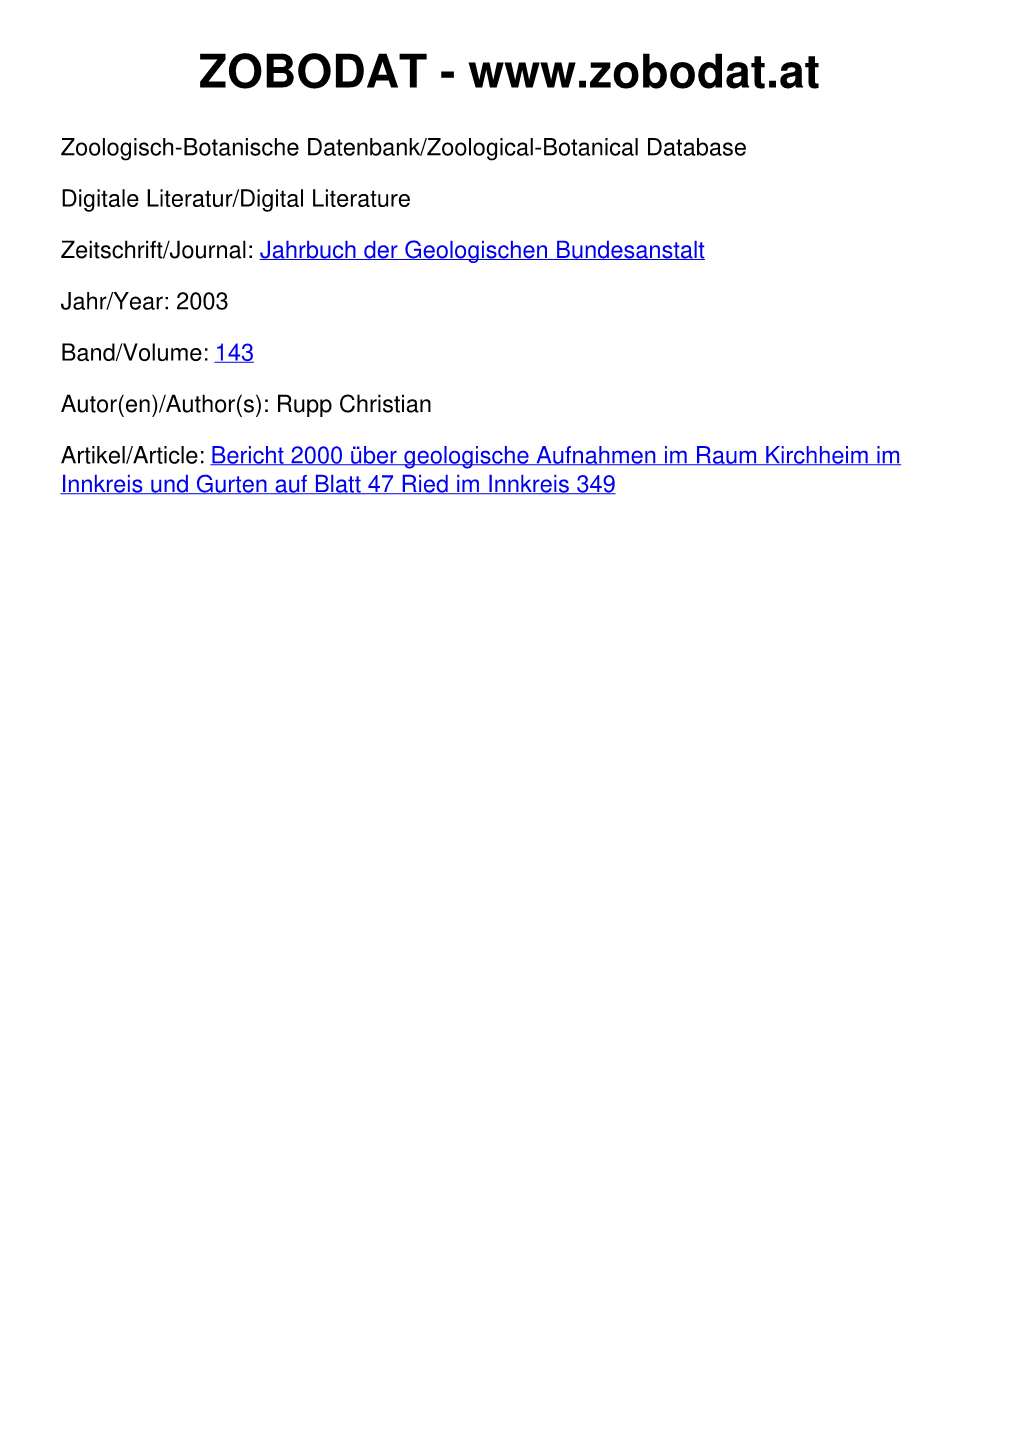 Bericht 2000 Über Geologische Aufnahmen Im Raum Kirchheim Im Innkreis Und Gurten Auf Blatt 47 Ried Im Innkreis 349 ©Geol